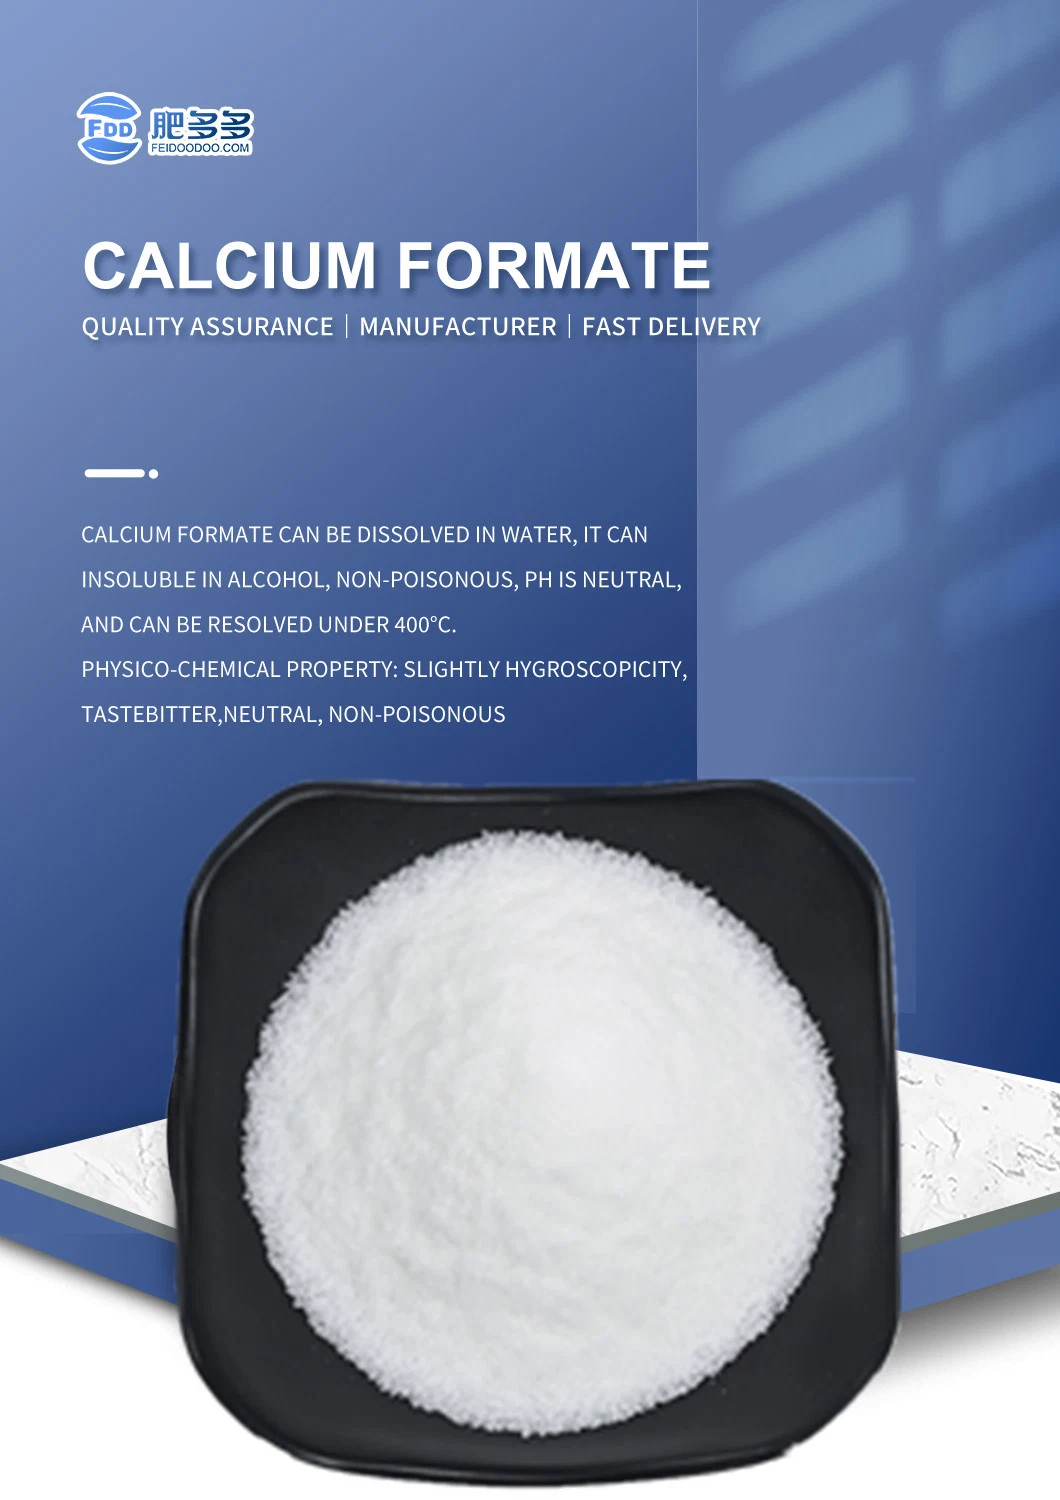 HS Code 2915120000 Food Additive Calcium Formate 98%